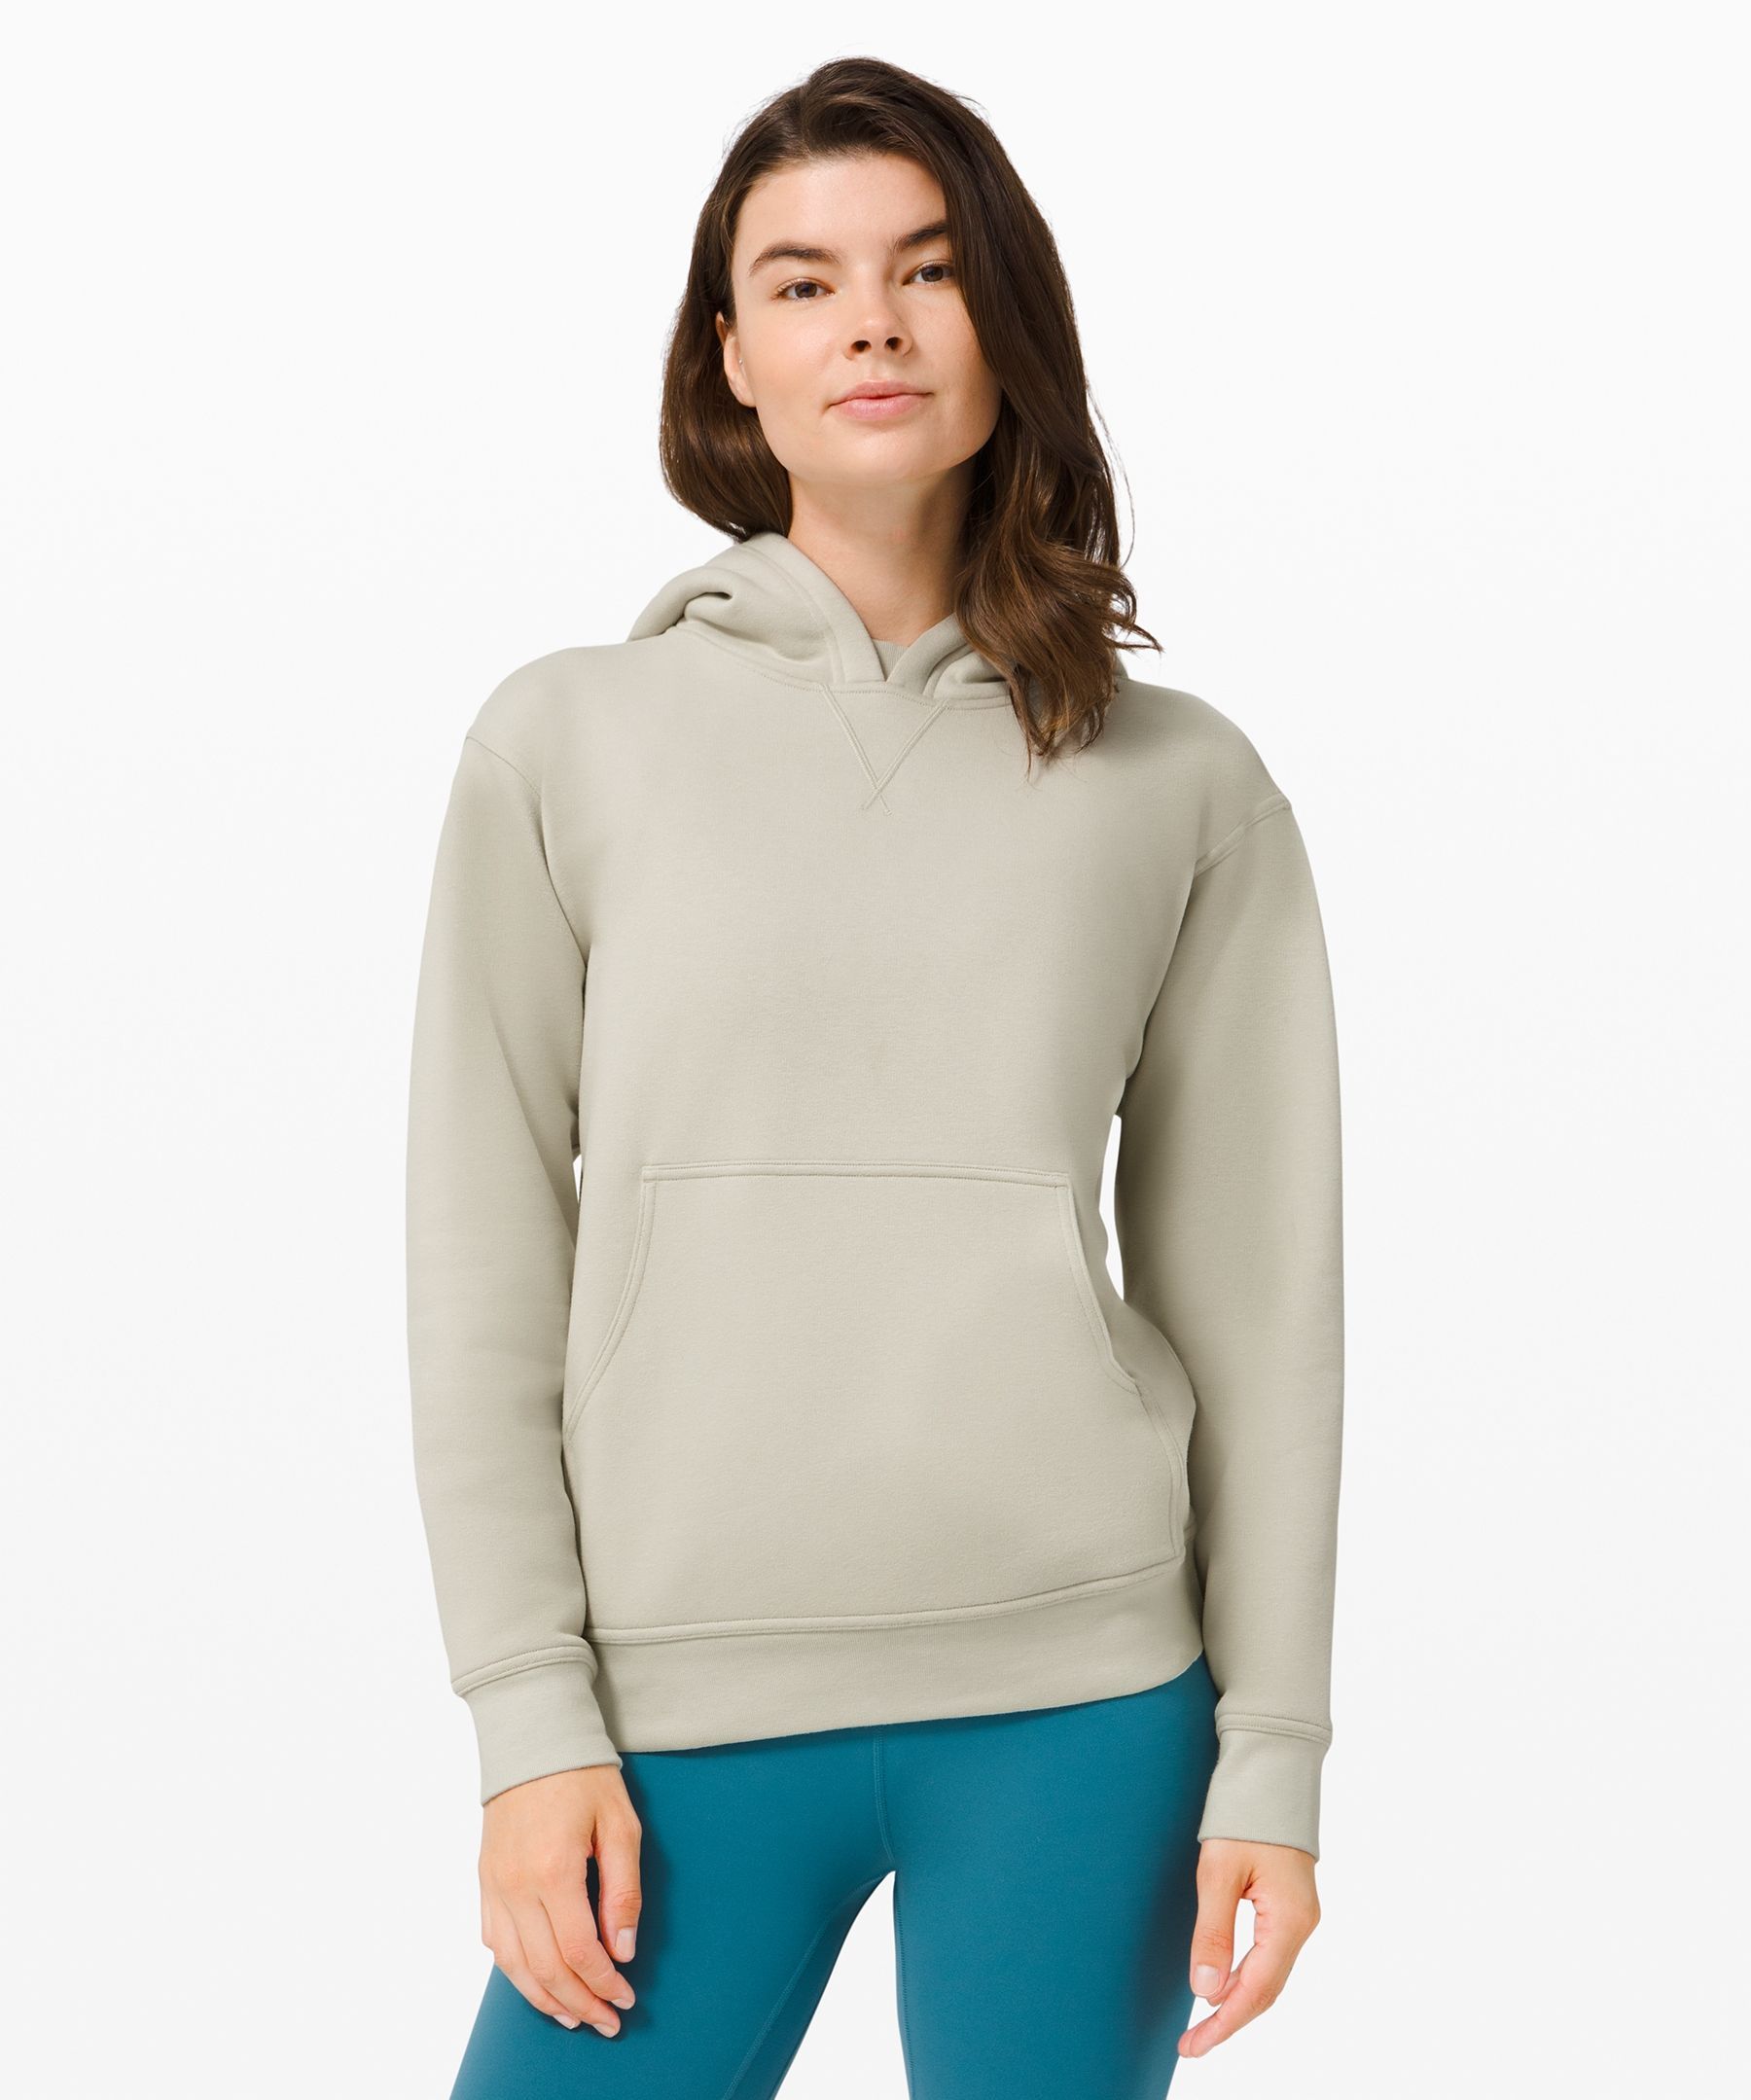 Long Sleeve Jumper Hooded Pullover Tops Blouse by XILALU Womens Warm Loose Hoodie Sweatshirt 